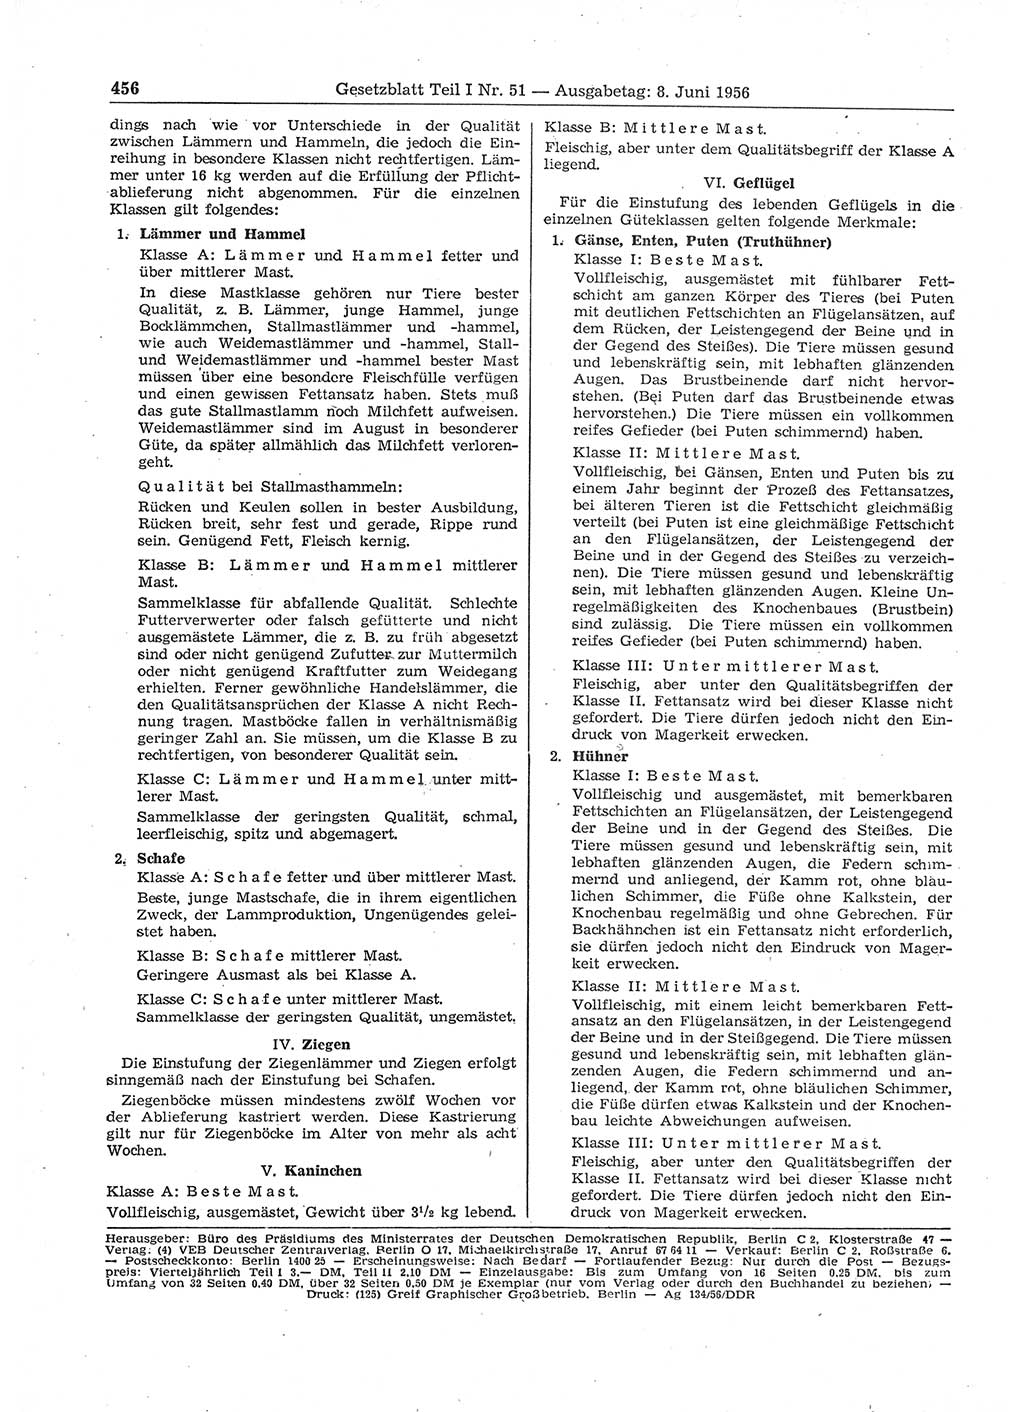 Gesetzblatt (GBl.) der Deutschen Demokratischen Republik (DDR) Teil Ⅰ 1956, Seite 456 (GBl. DDR Ⅰ 1956, S. 456)